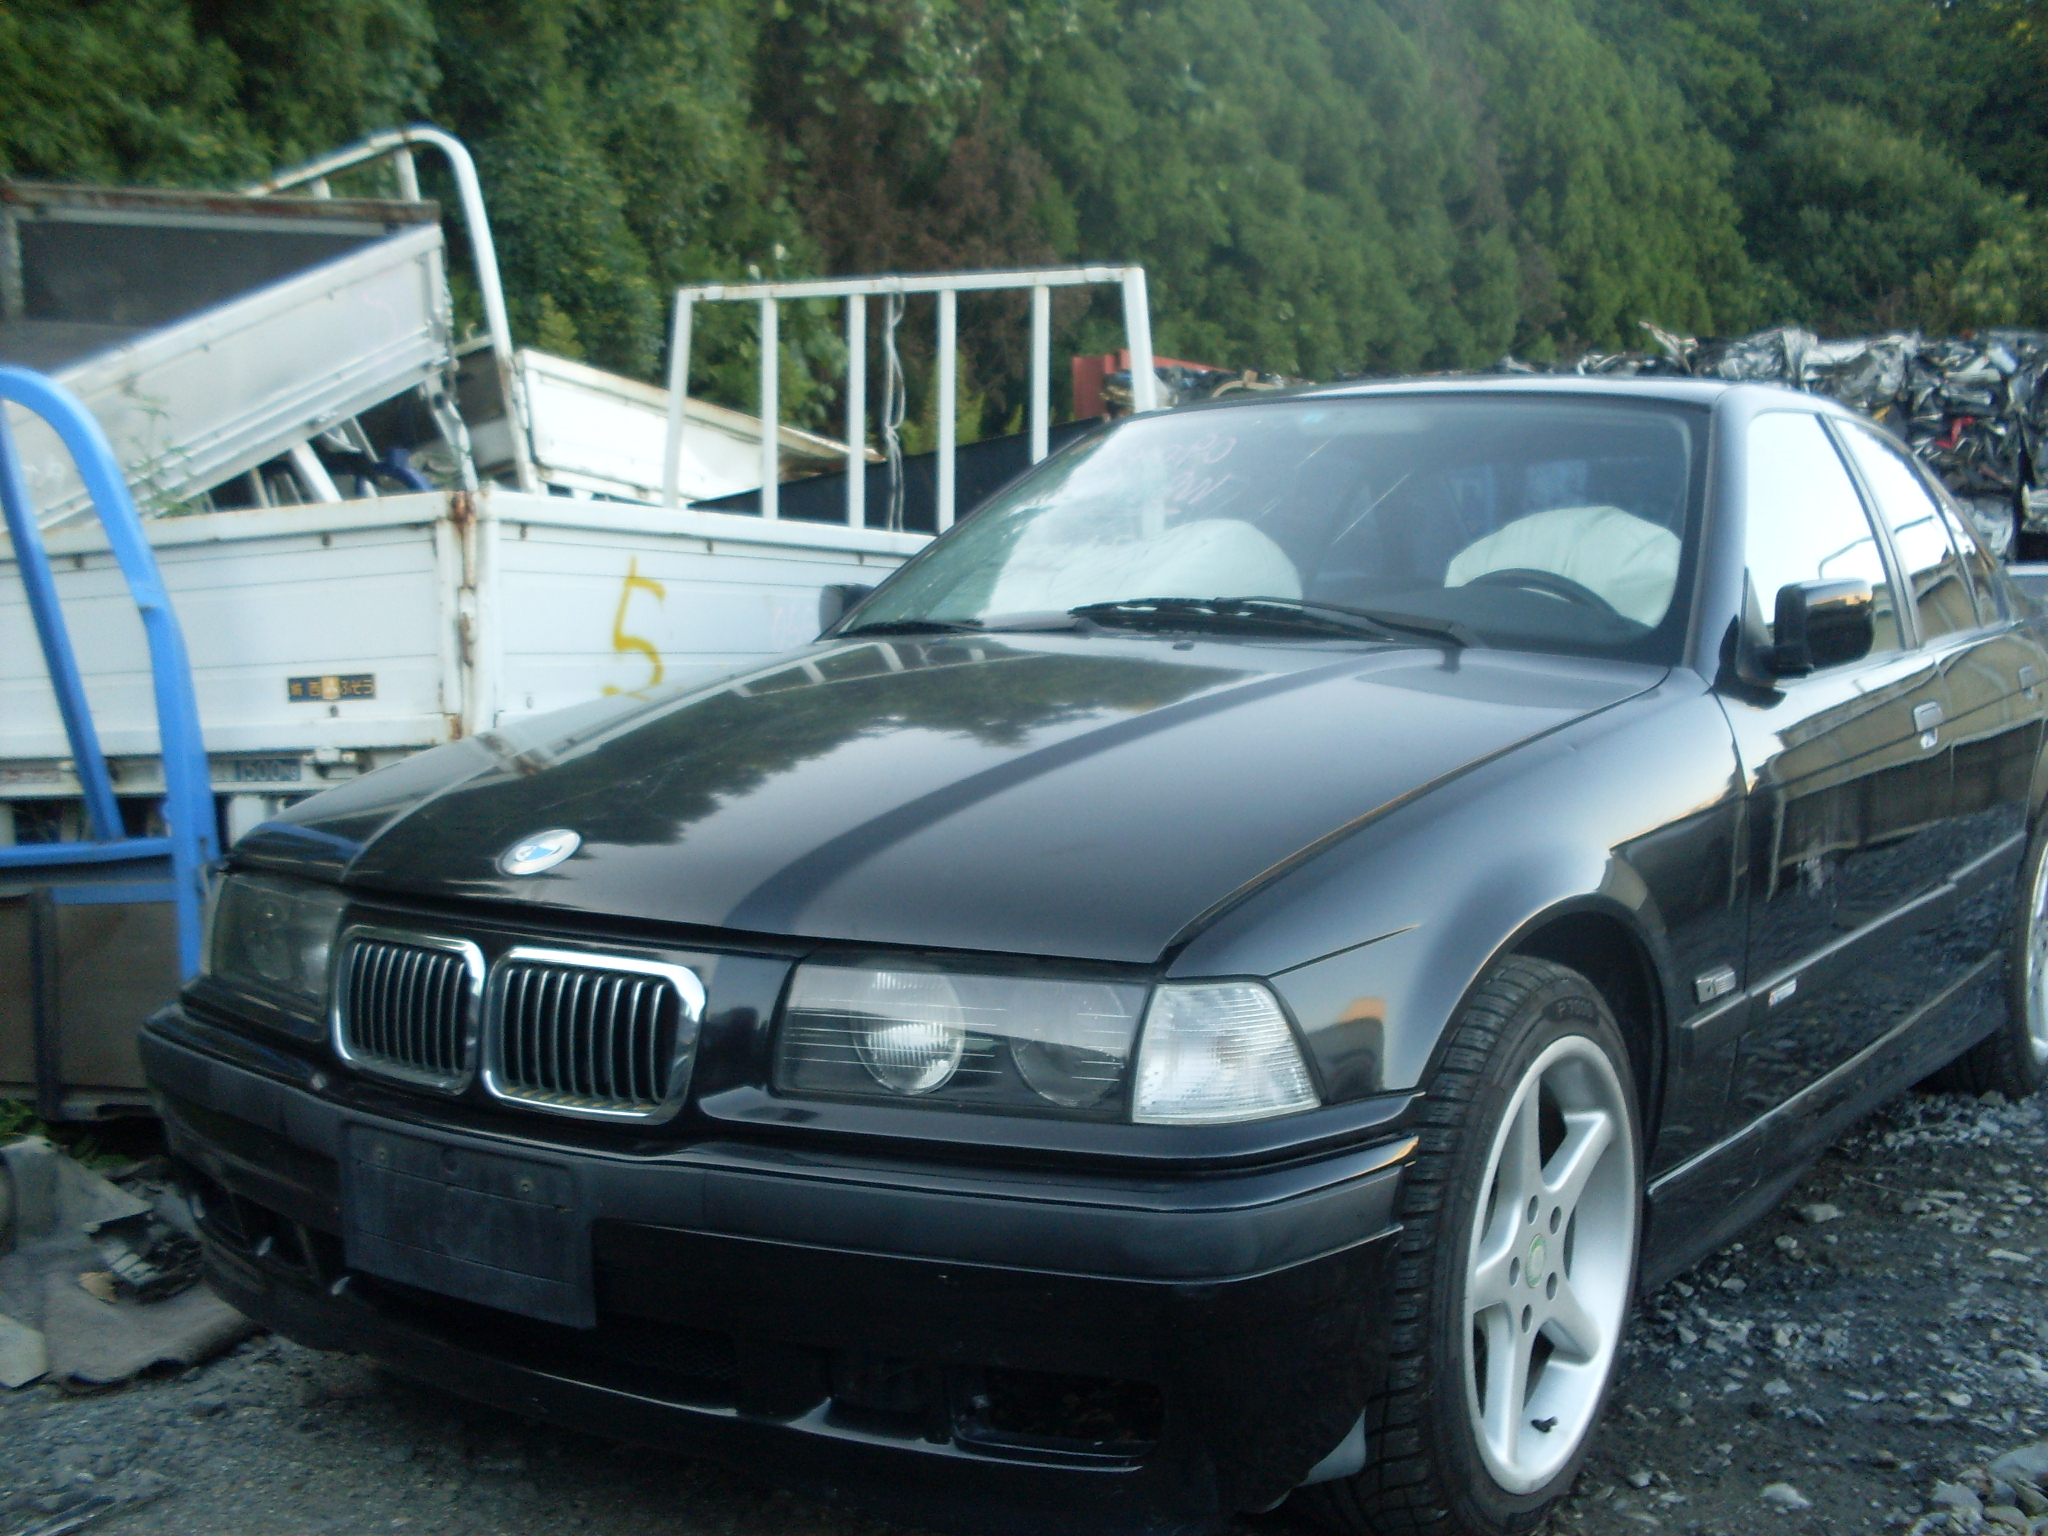  BMW 318i (E36), 1990-1998 :  1